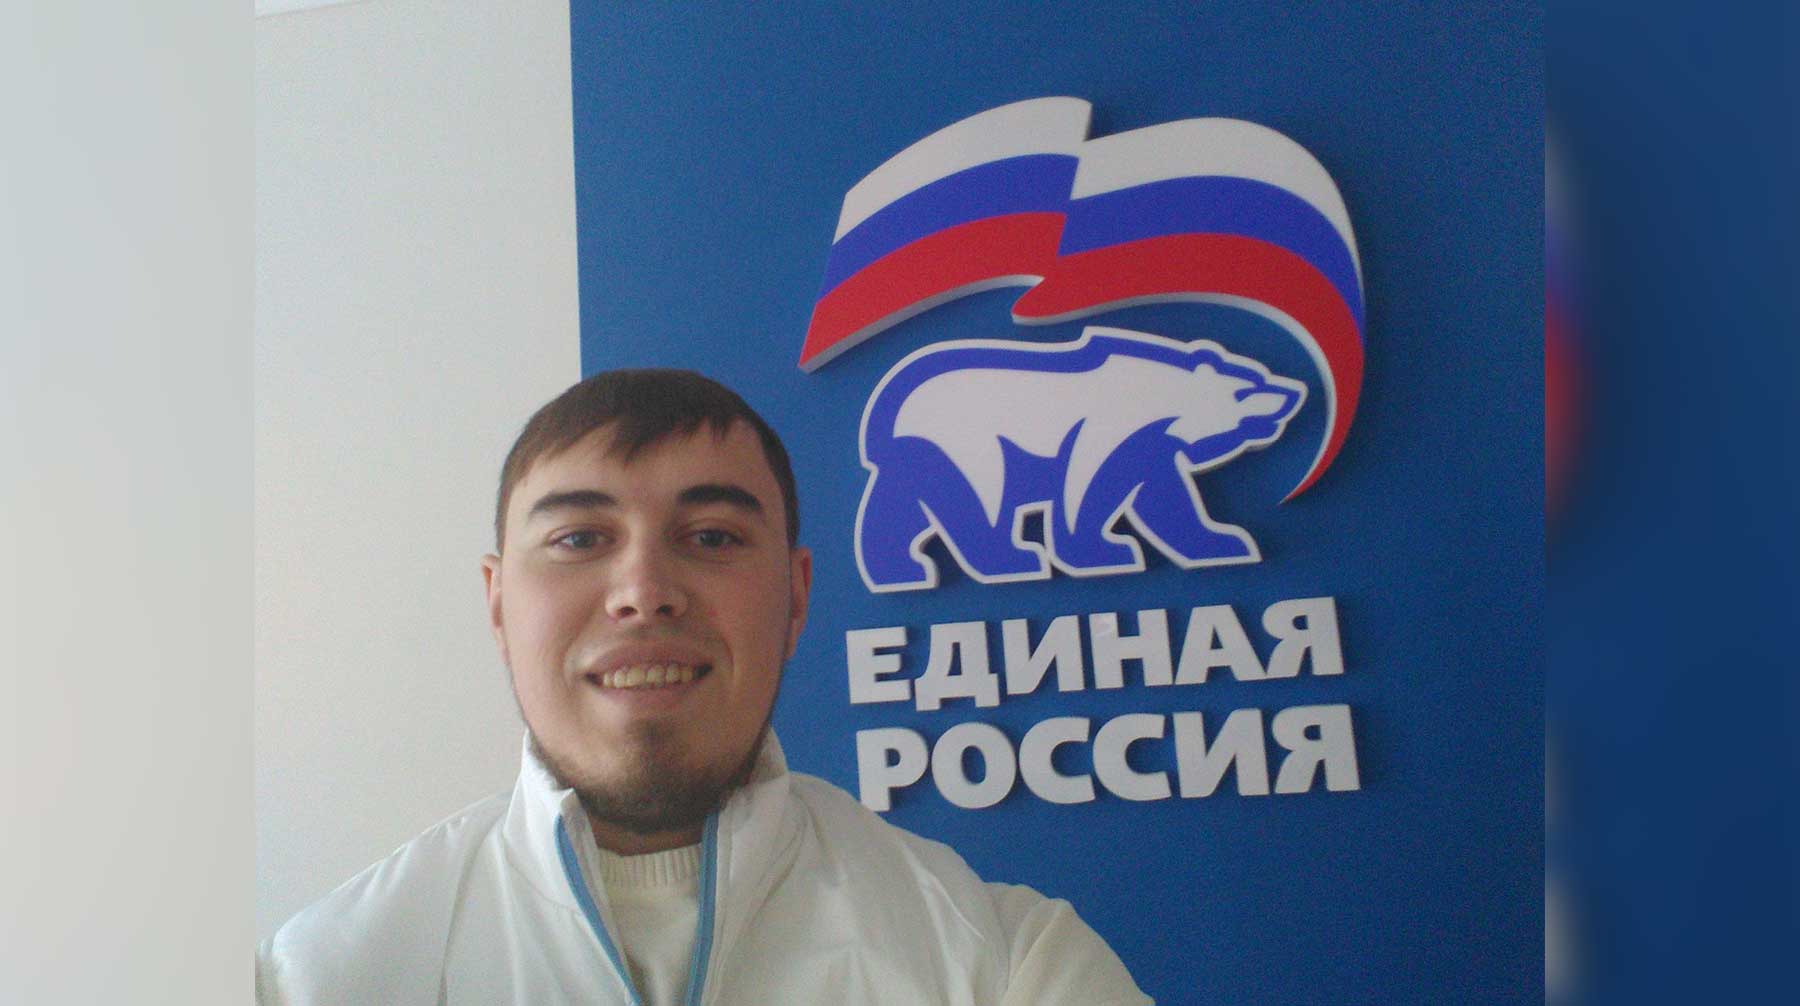 По данным СМИ, партия потерпела несколько поражений на предыдущих выборах и решила исправить ситуацию Алексей Жарновский